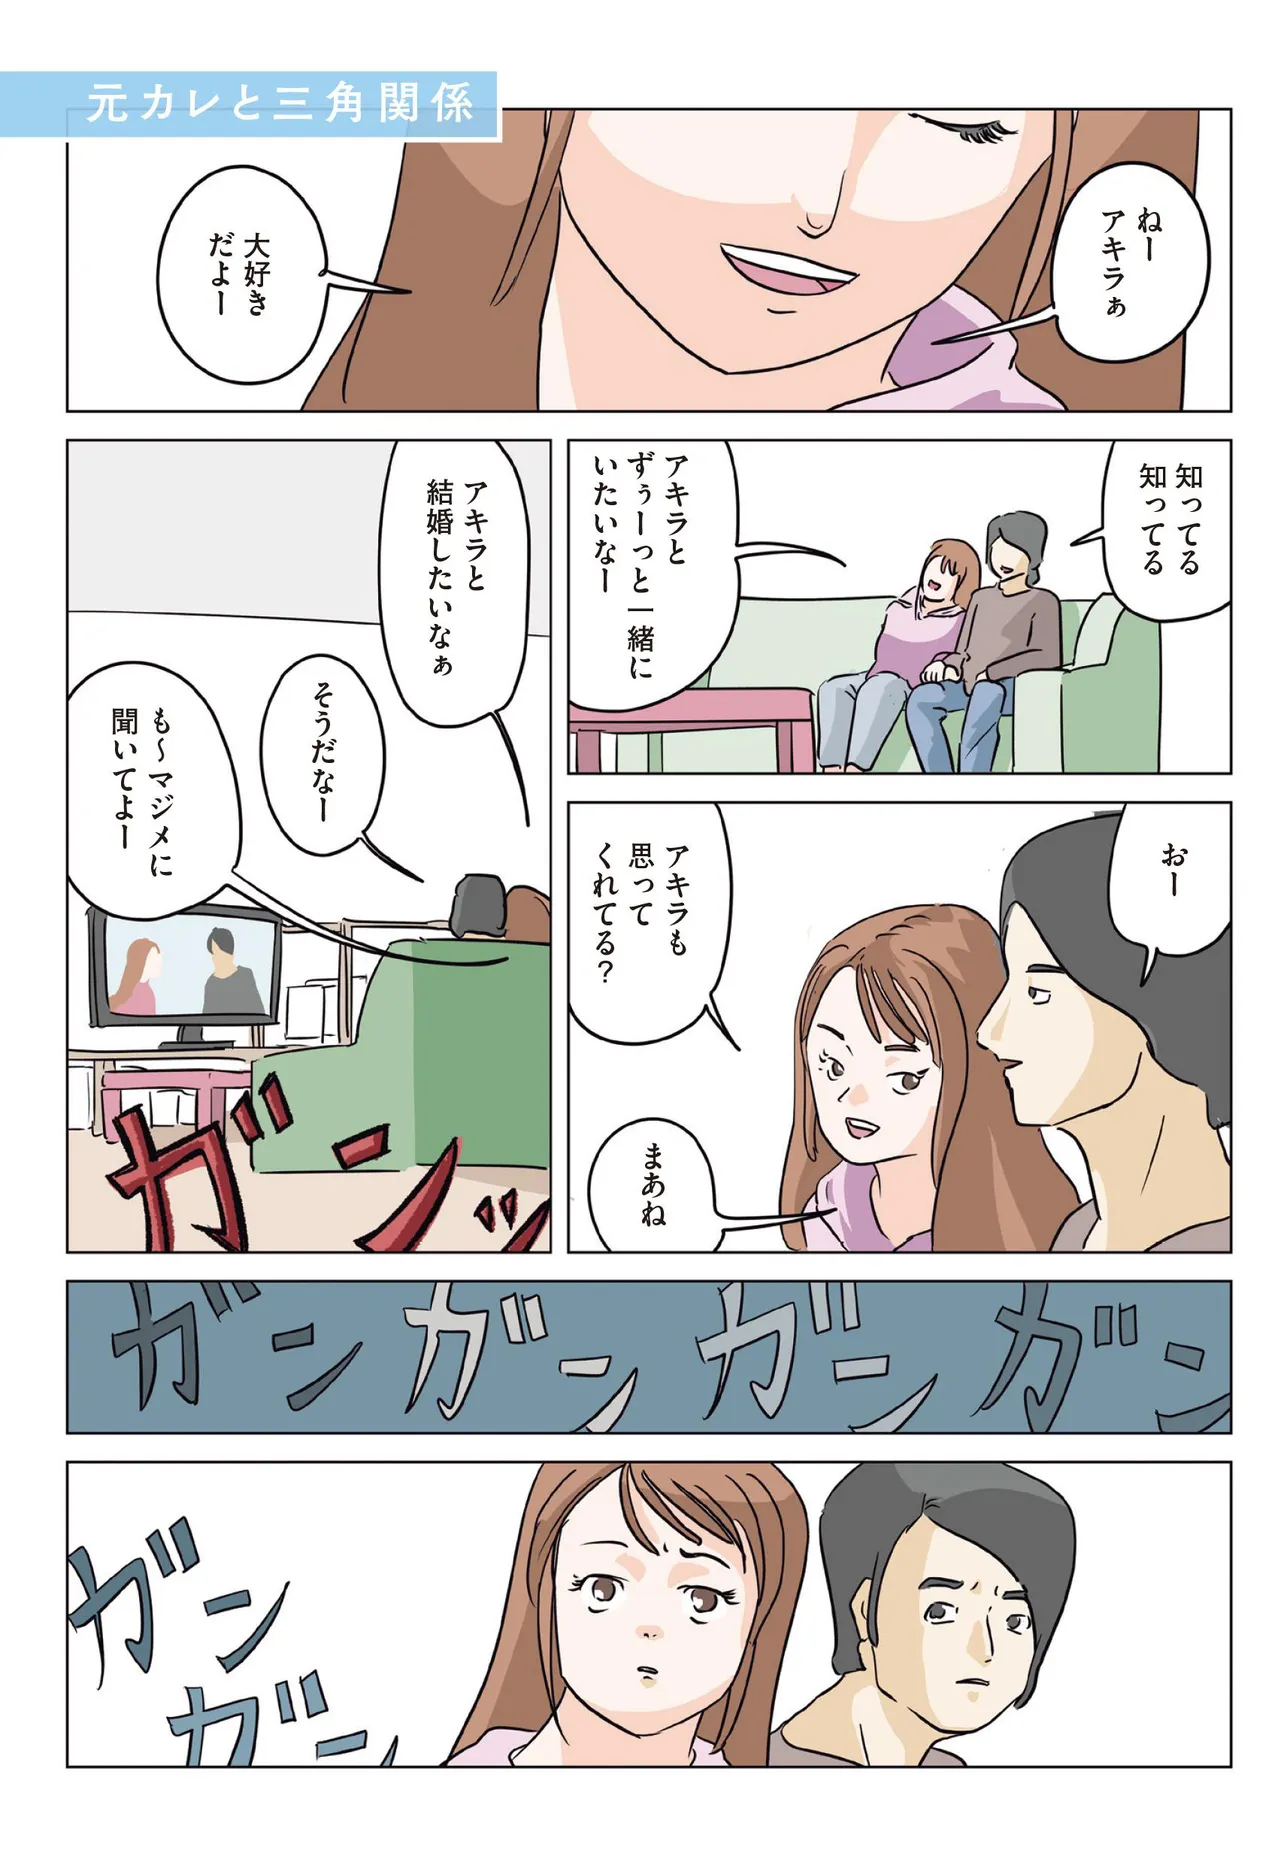 【漫画】土屋太鳳主演でドラマ化される「元カレと三角関係」